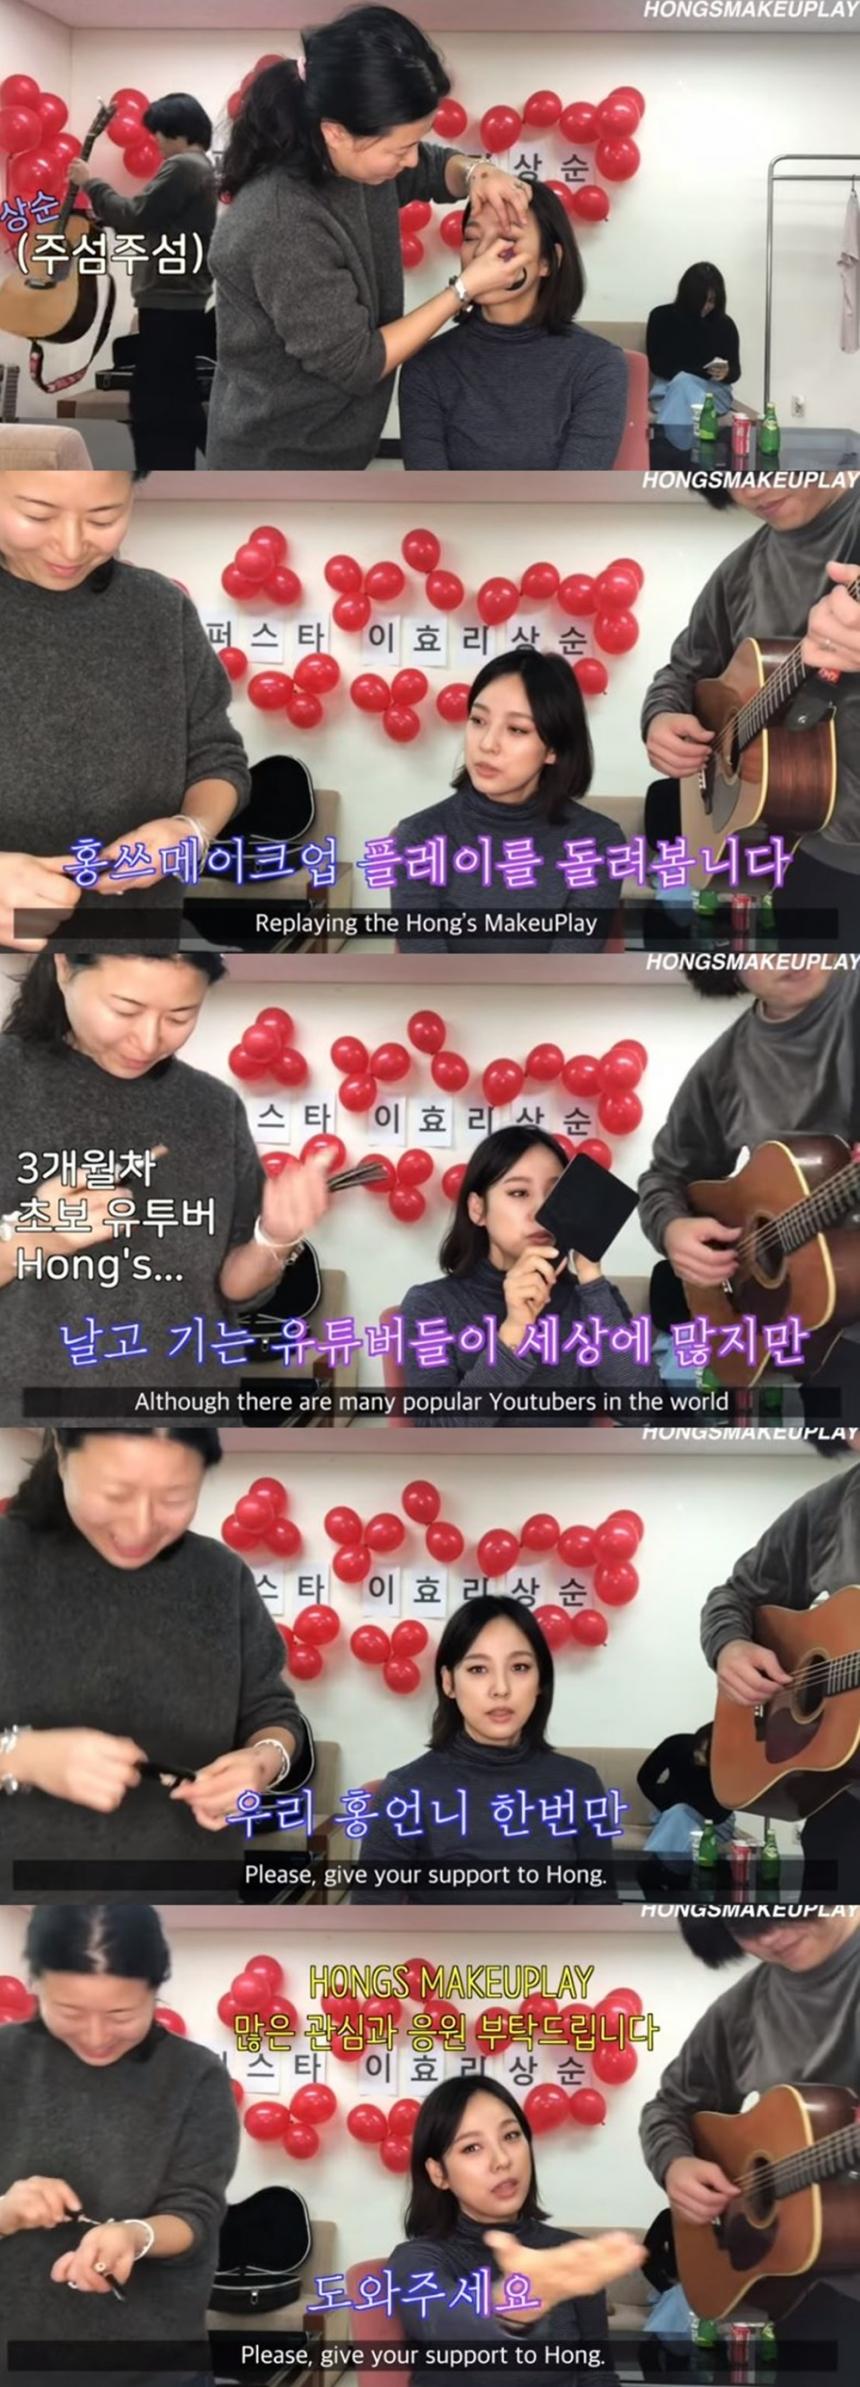 홍현정 유튜브 채널 ‘Hong's MakeUplay’ 캡처